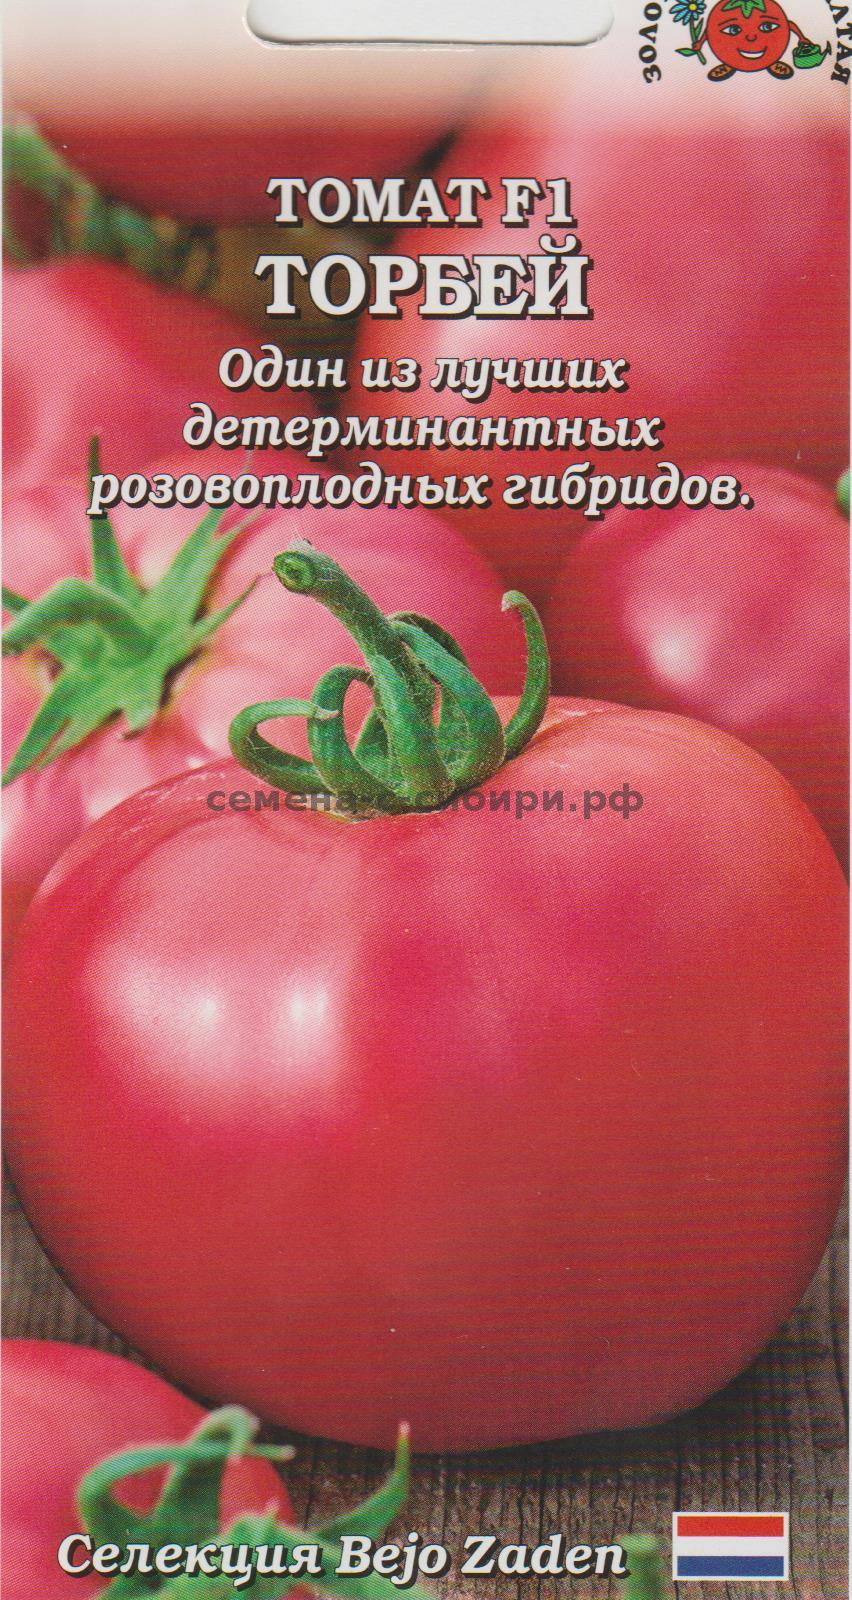 Описание сорта томата Торбей, его характеристика и урожайность